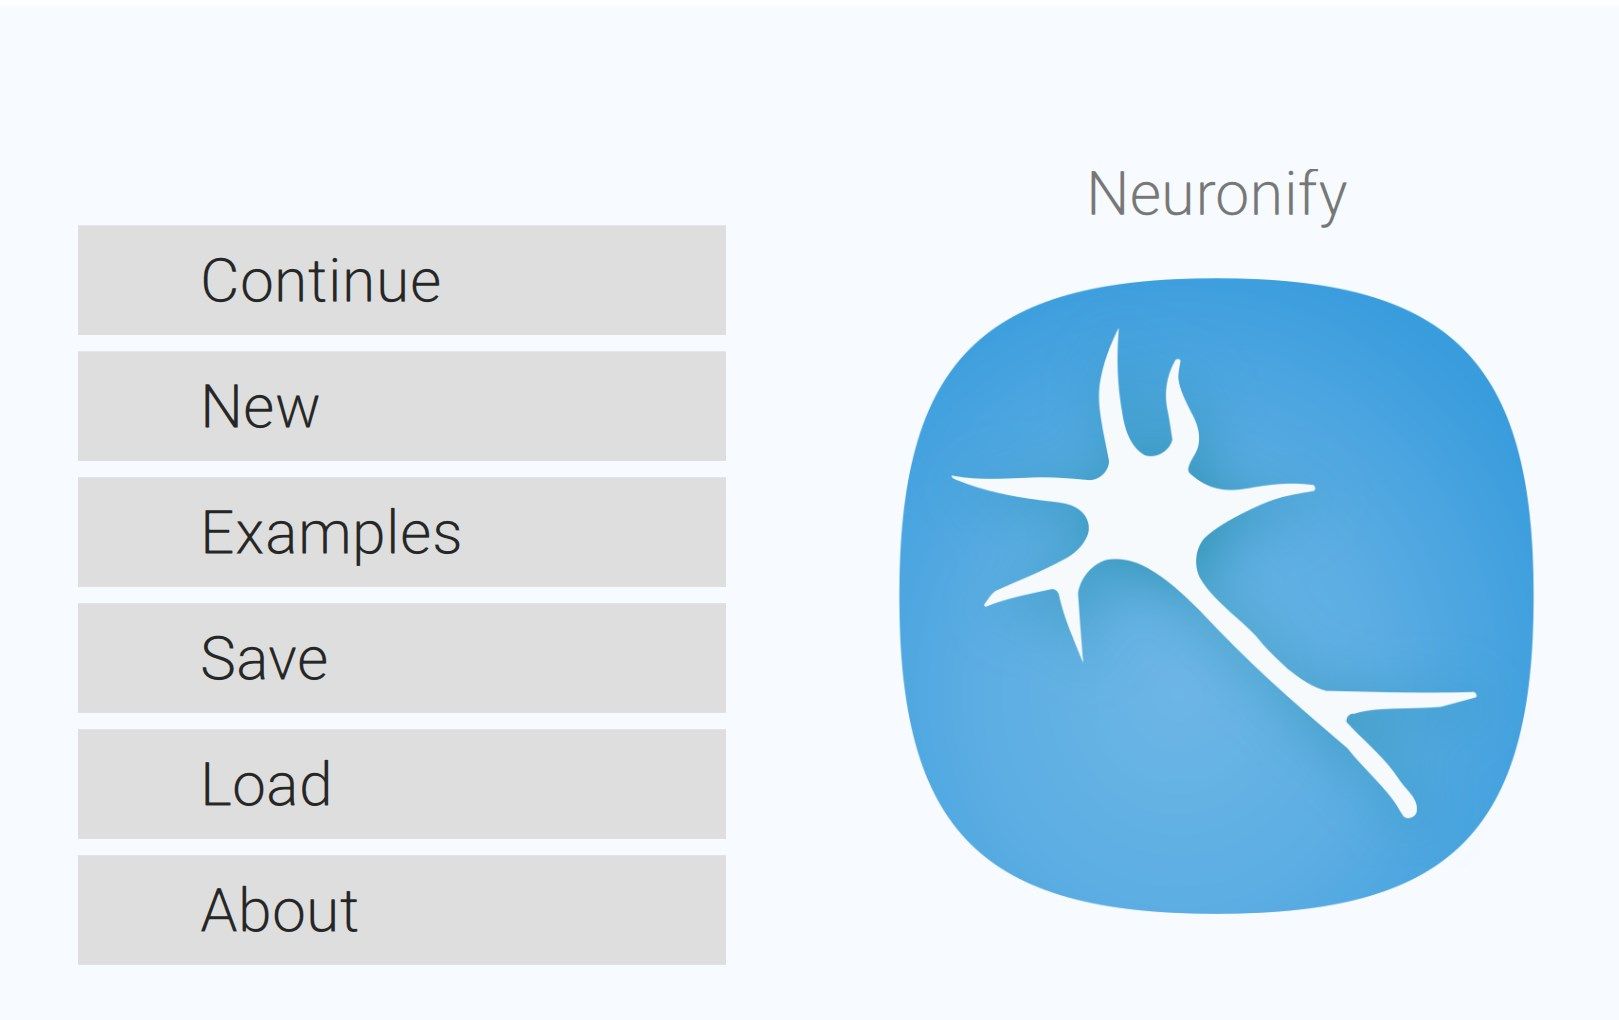 Neuronify